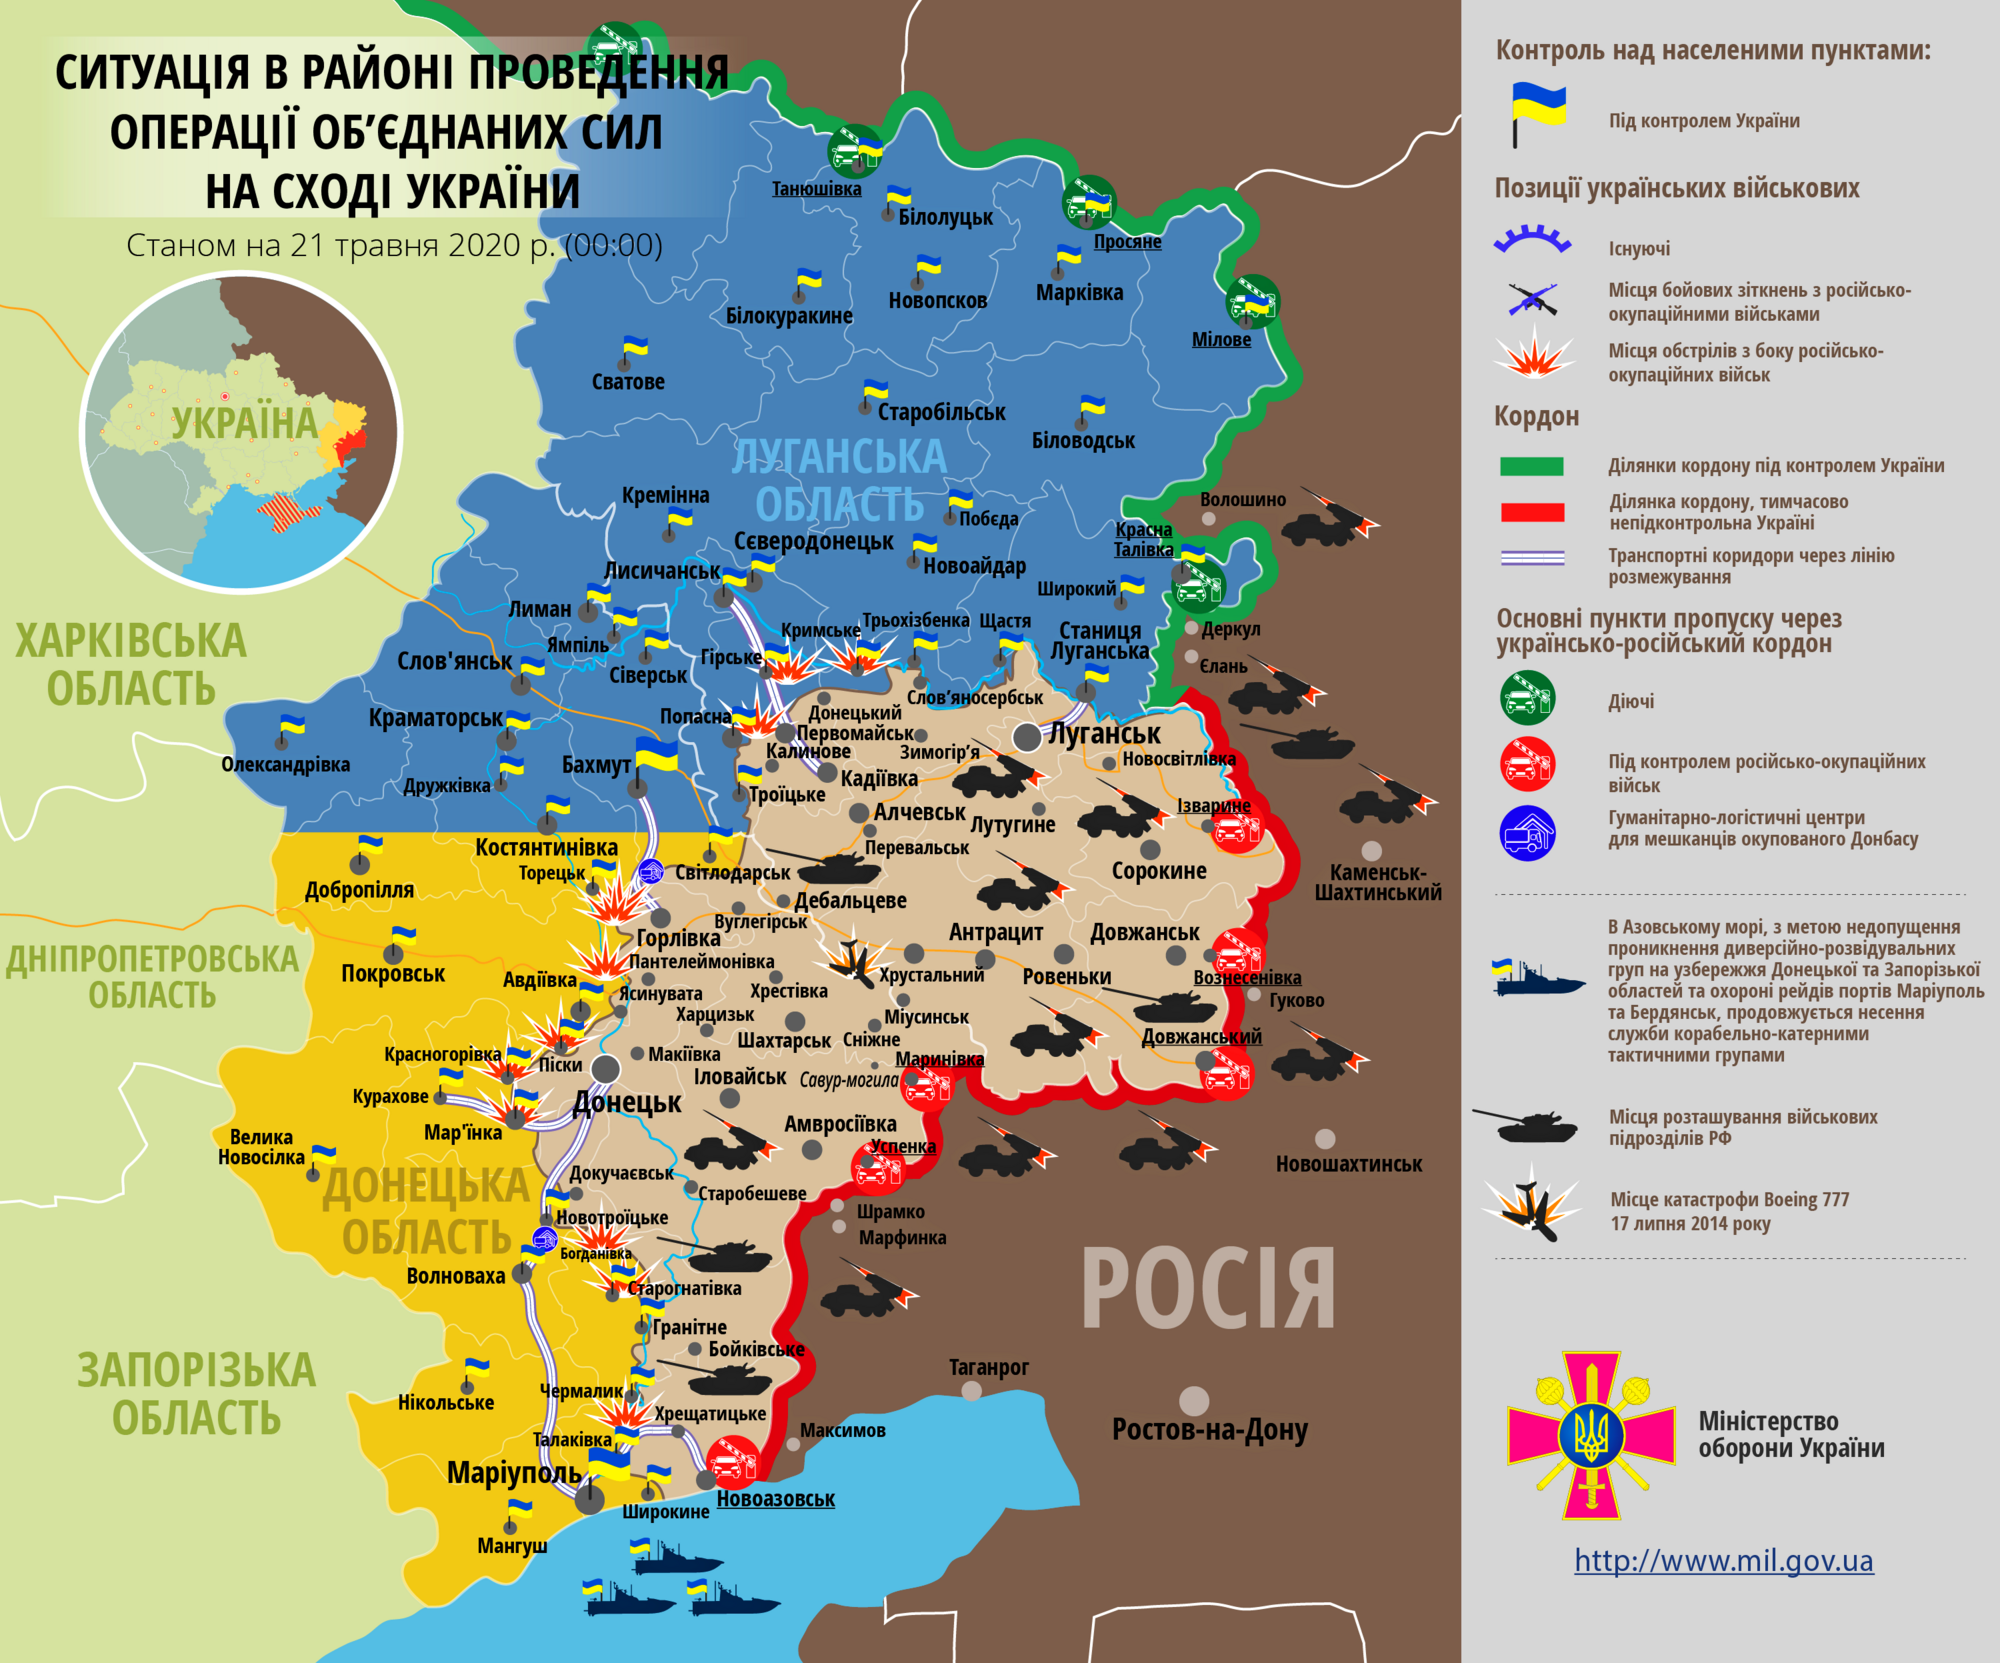 Ситуация в зоне проведения ООС на Донбассе 21 мая